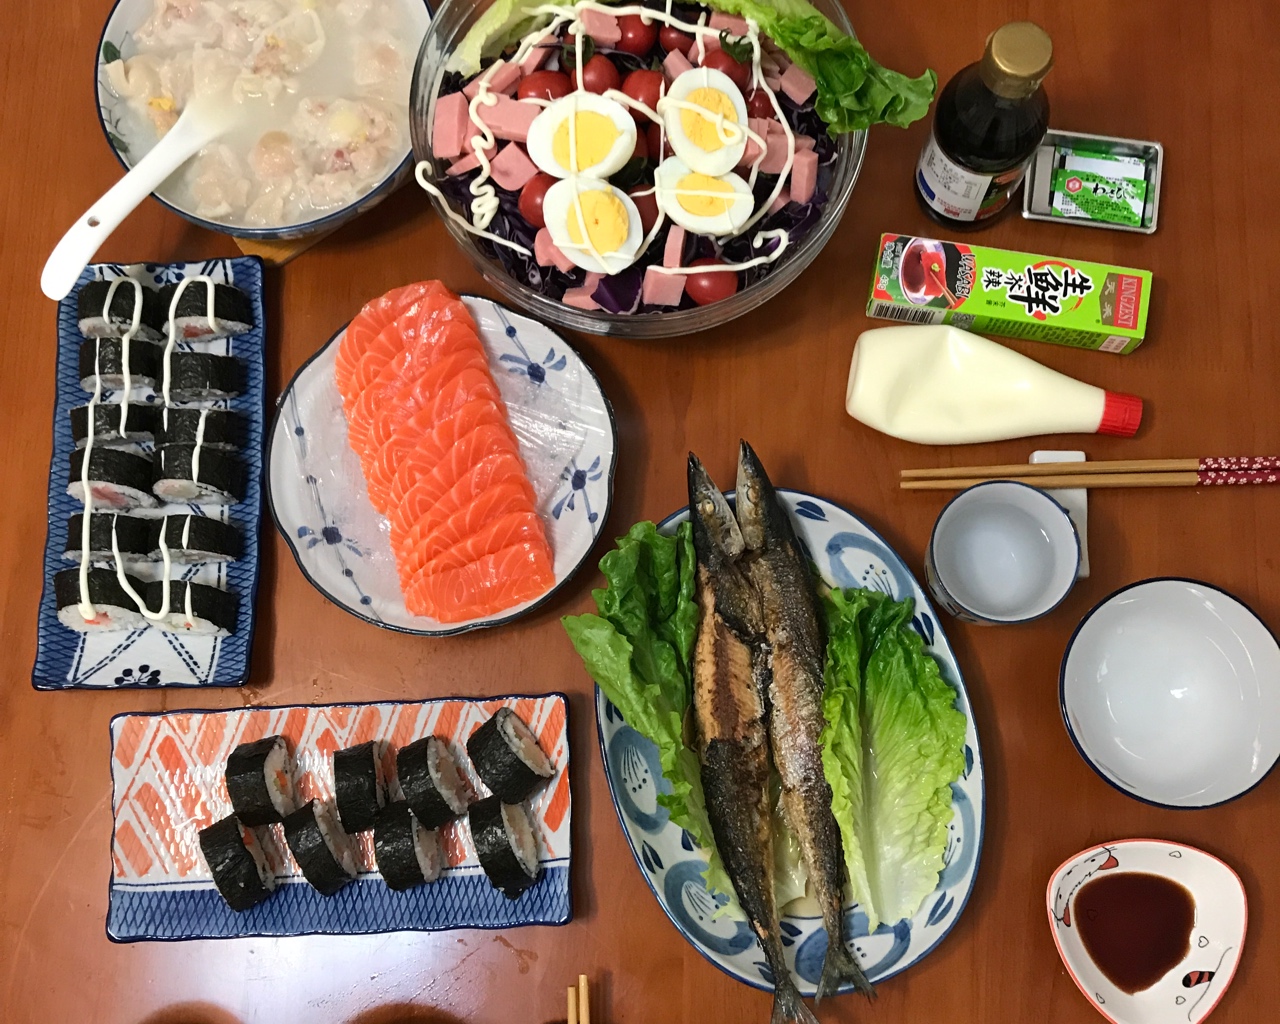 日式料理晚餐食谱的做法